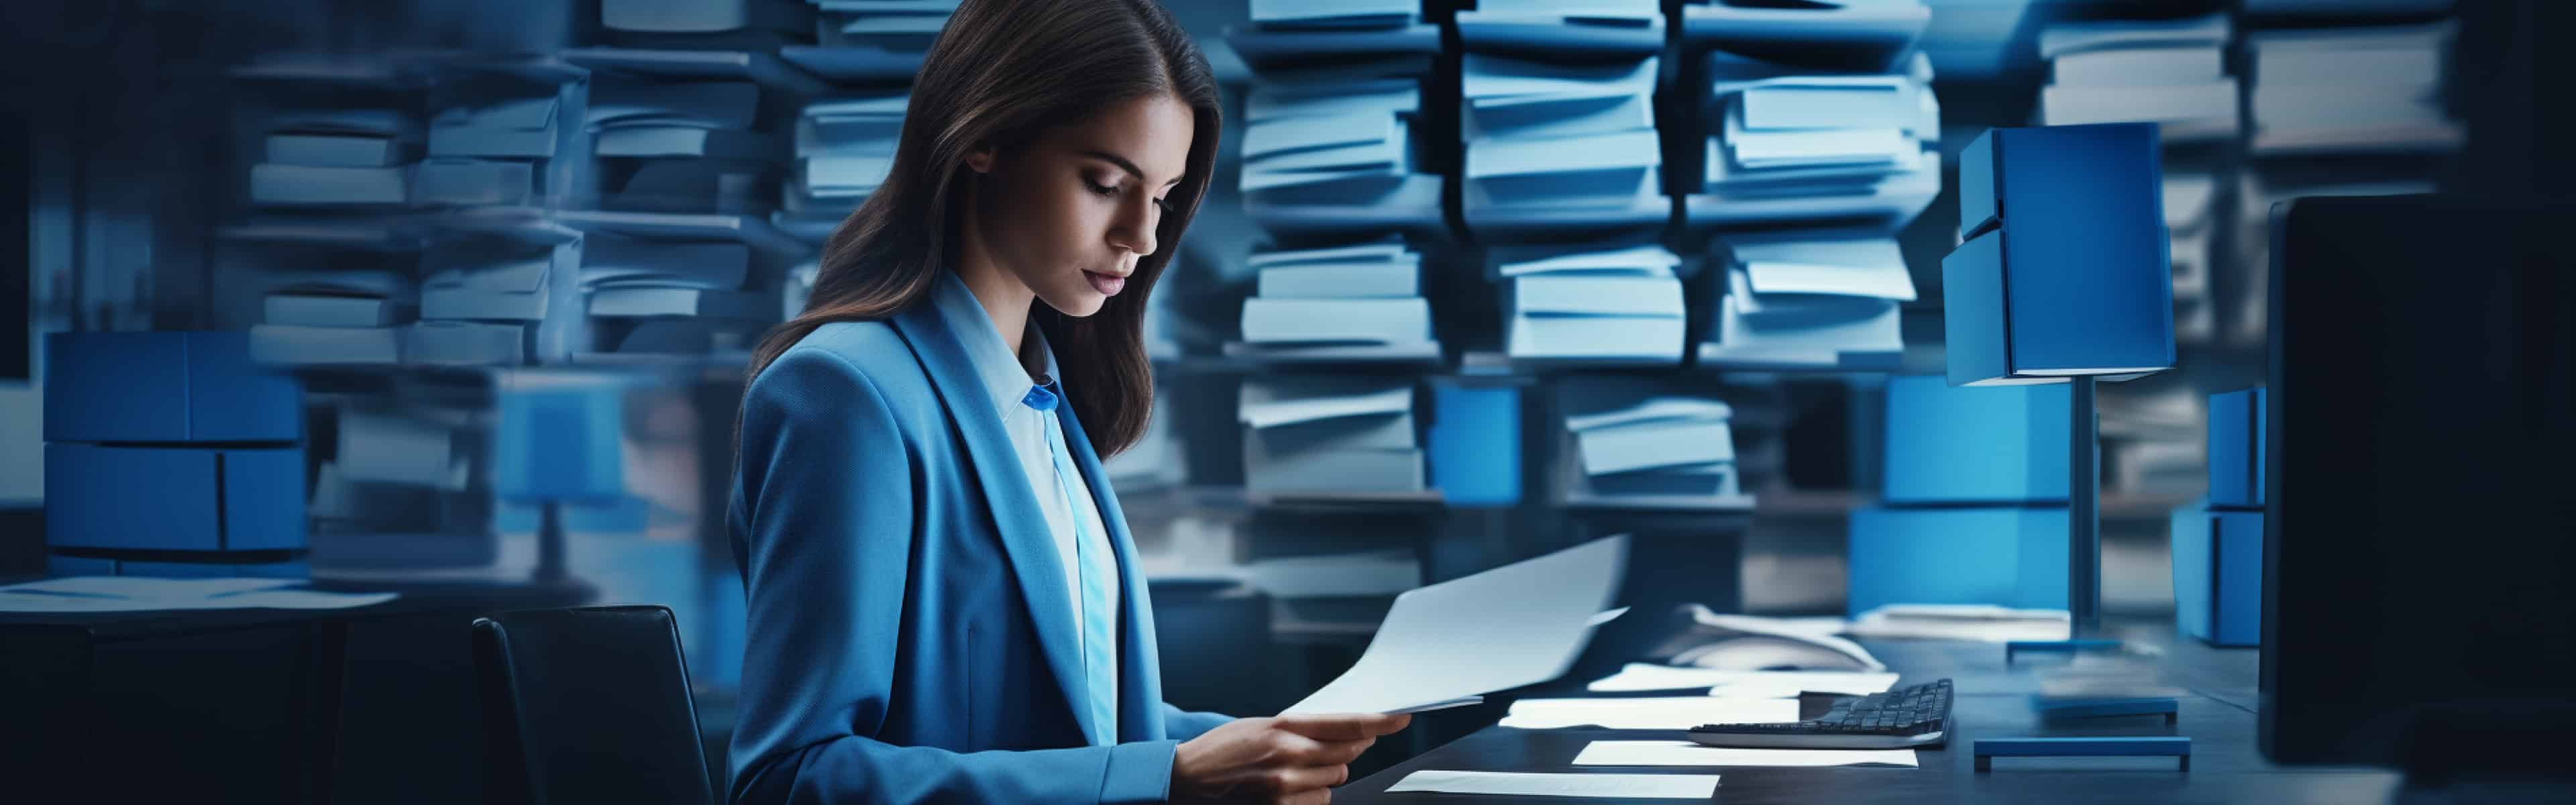 Bild einer Frau die vor einem Computer sitzt umgeben von vielen Dokumenten